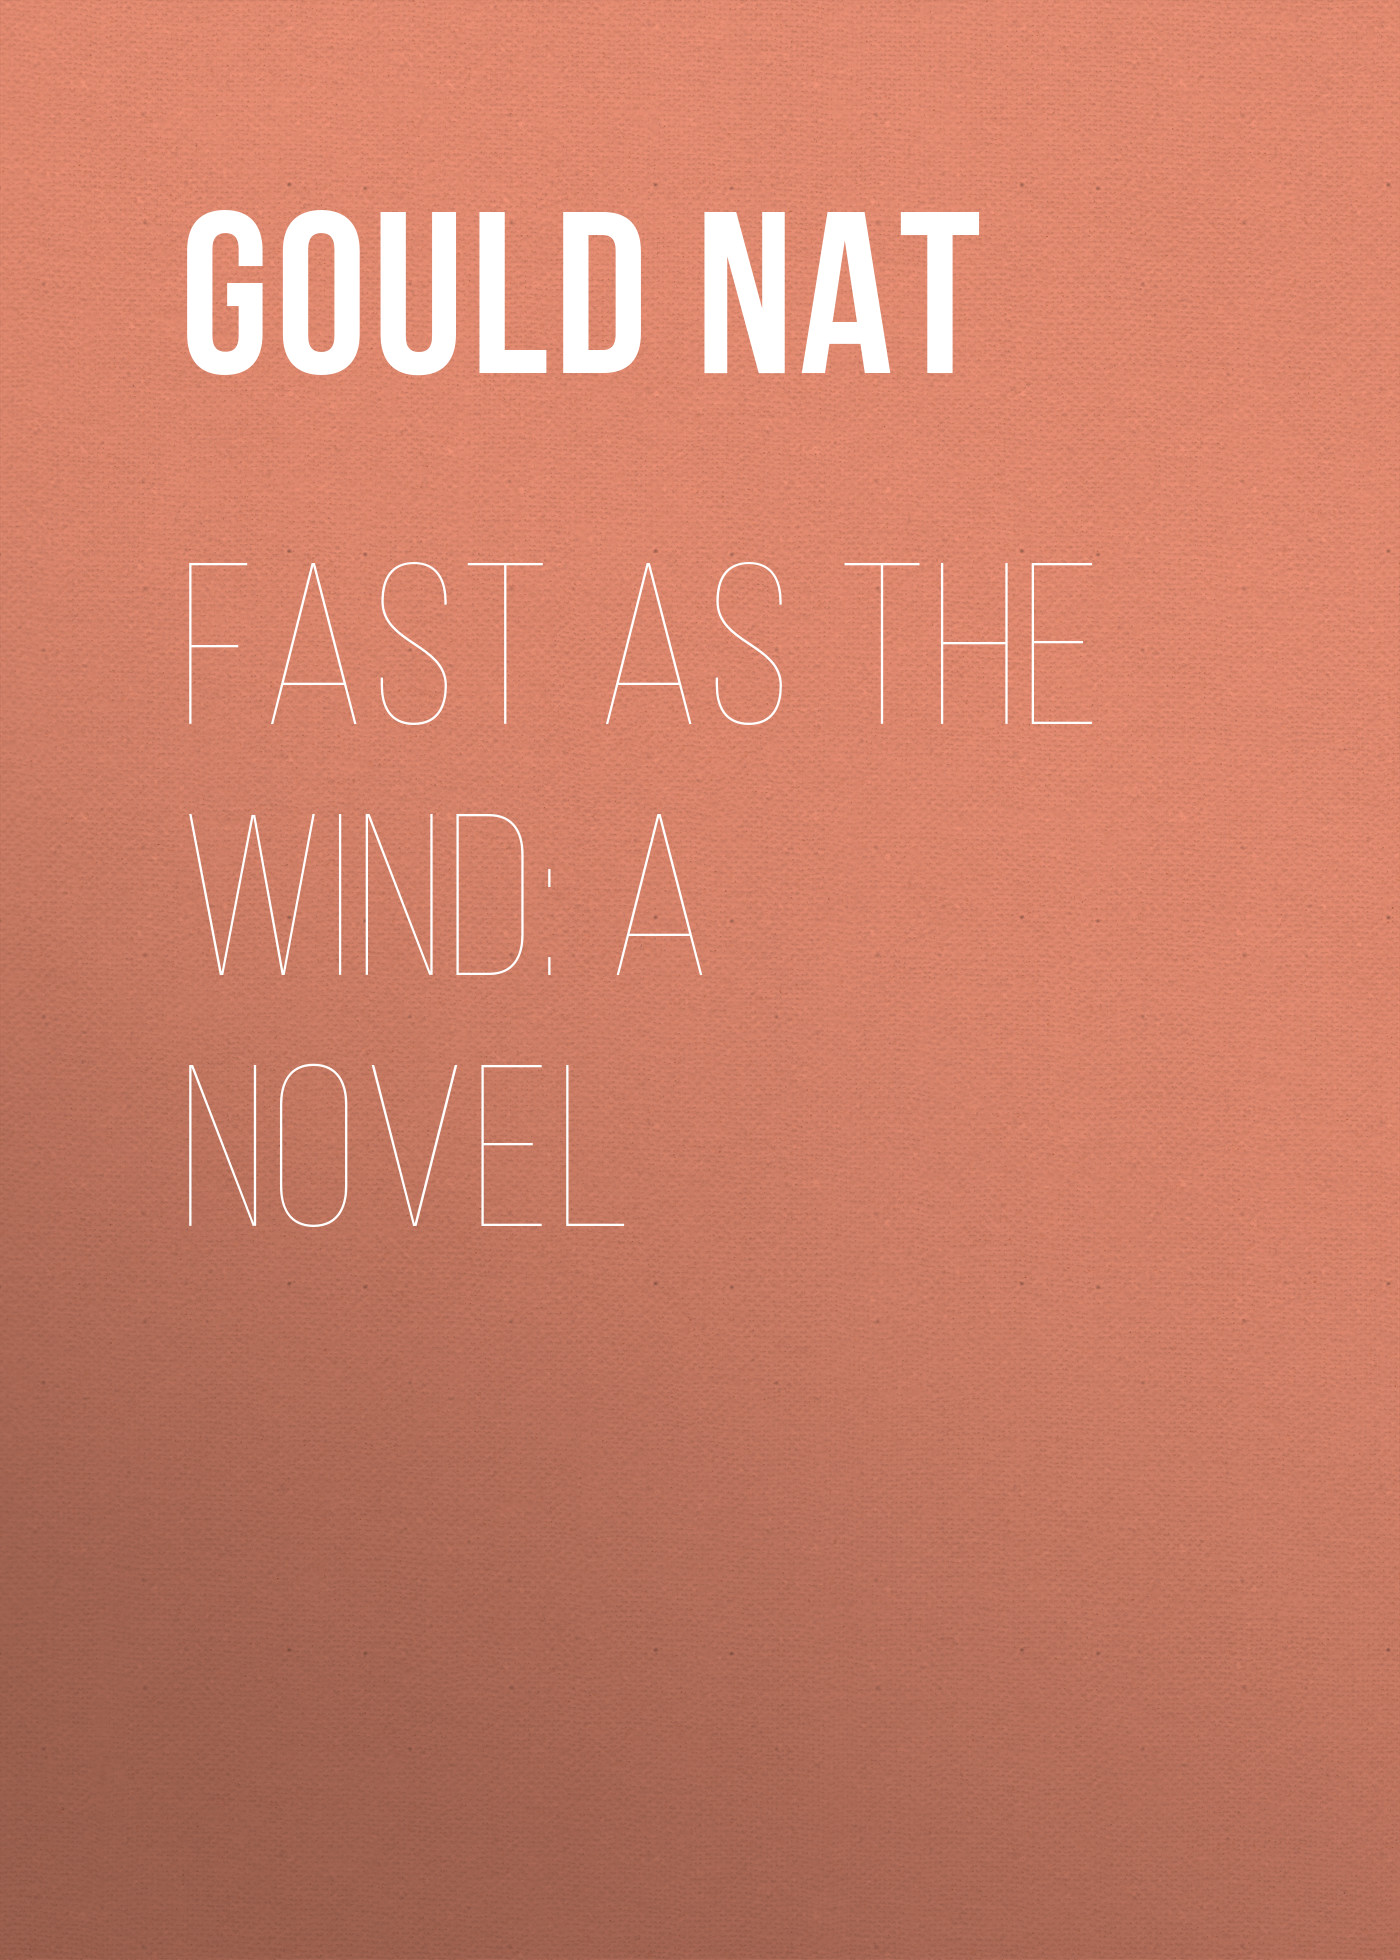 Книга Fast as the Wind: A Novel из серии , созданная Nat Gould, может относится к жанру Зарубежная старинная литература, Зарубежная классика. Стоимость электронной книги Fast as the Wind: A Novel с идентификатором 24935917 составляет 0 руб.